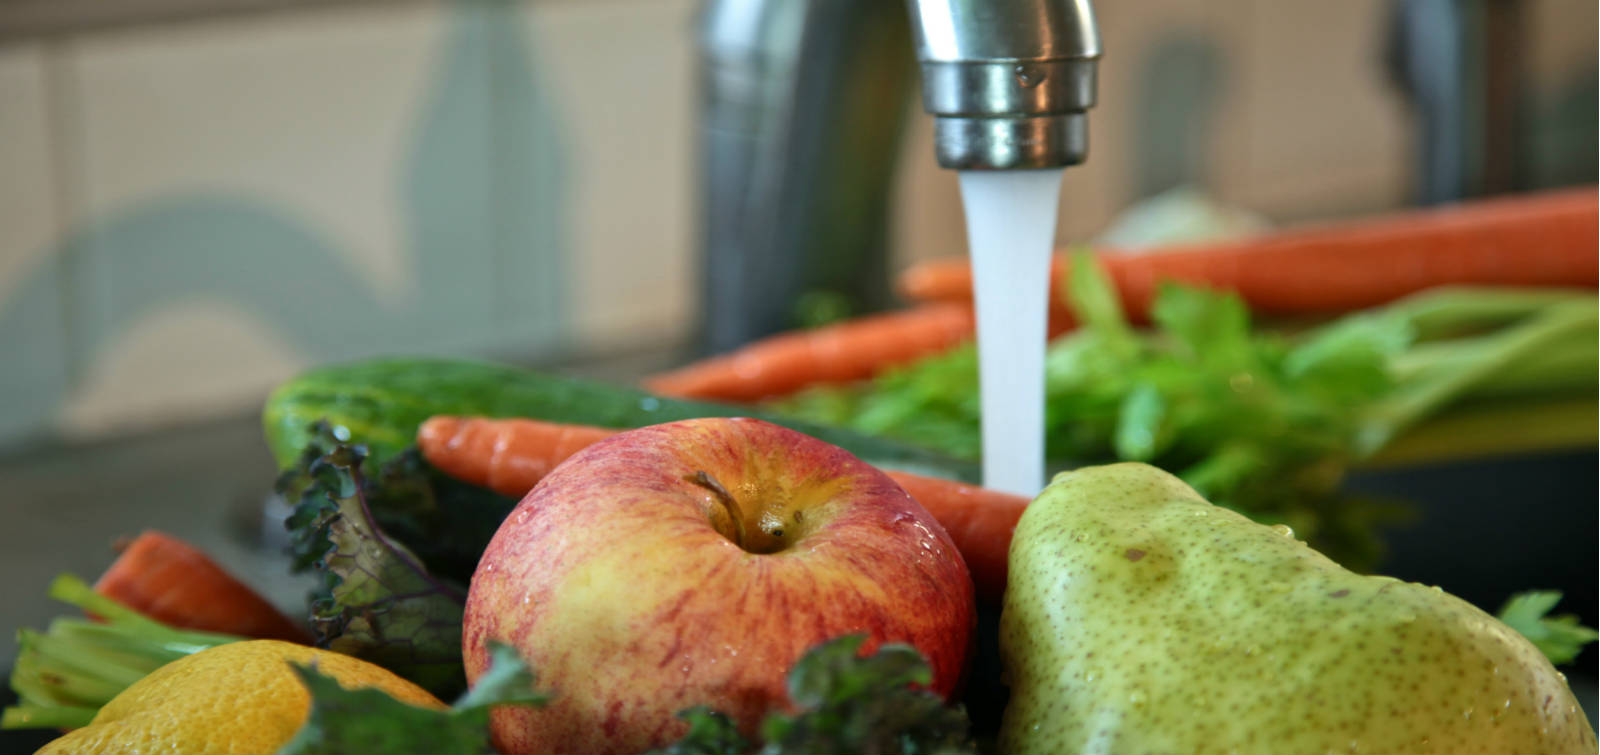 Овощи не мыты. Мытье фруктов. Мытье овощей. Плохо вымытые фрукты и овощи. Пестициды в продуктах питания.